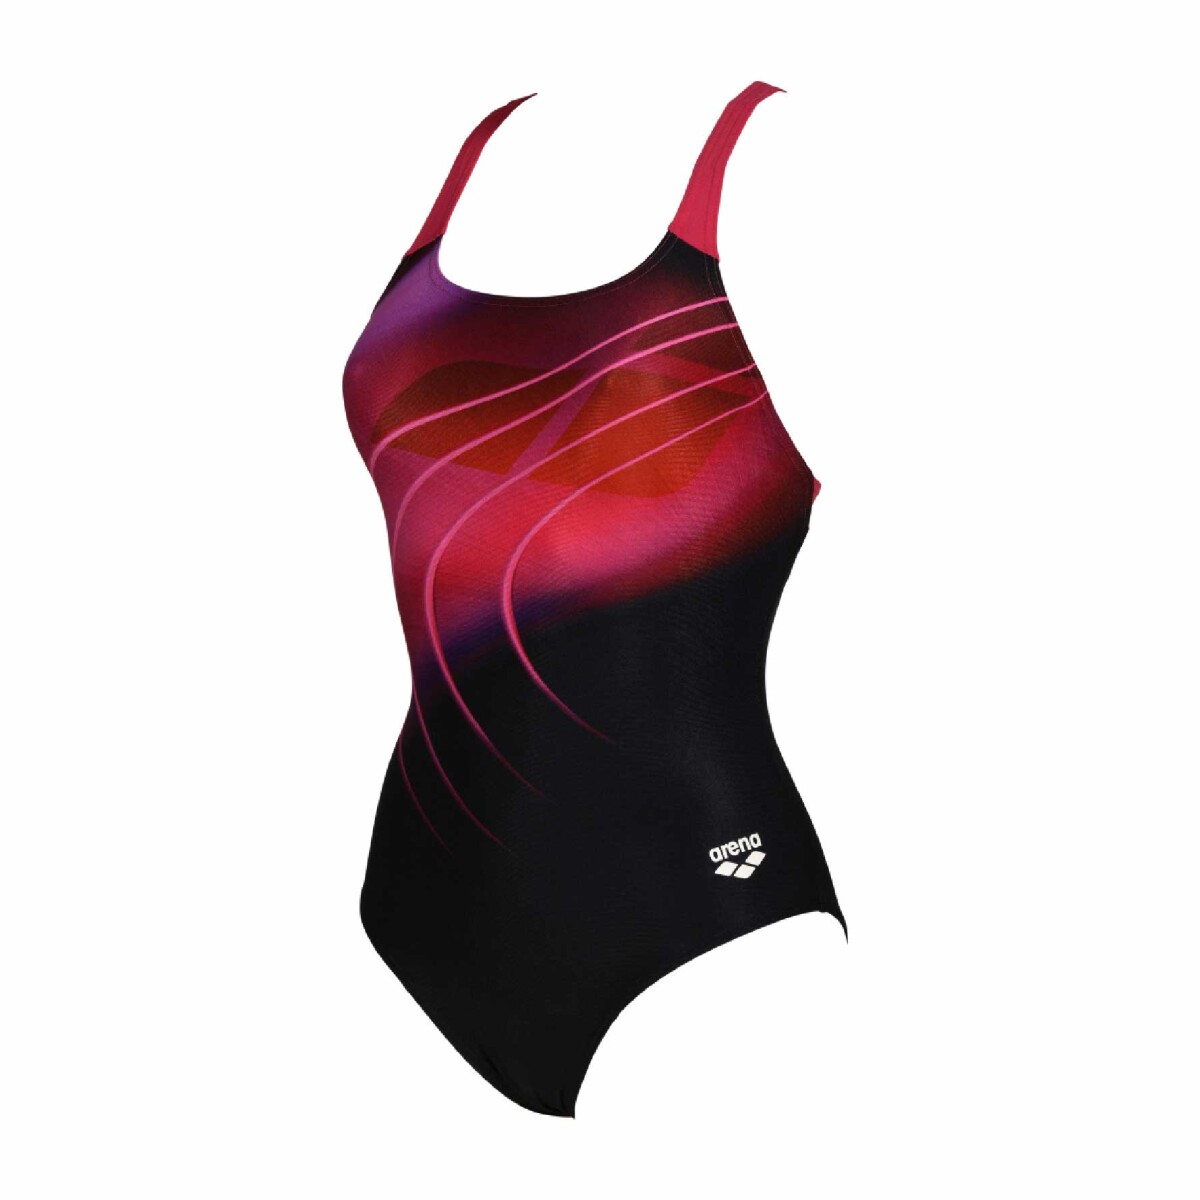 Malla De Entrenamiento Para Mujer Arena Swimsuit Swim Pro Back Placement - Negro y Rosa 